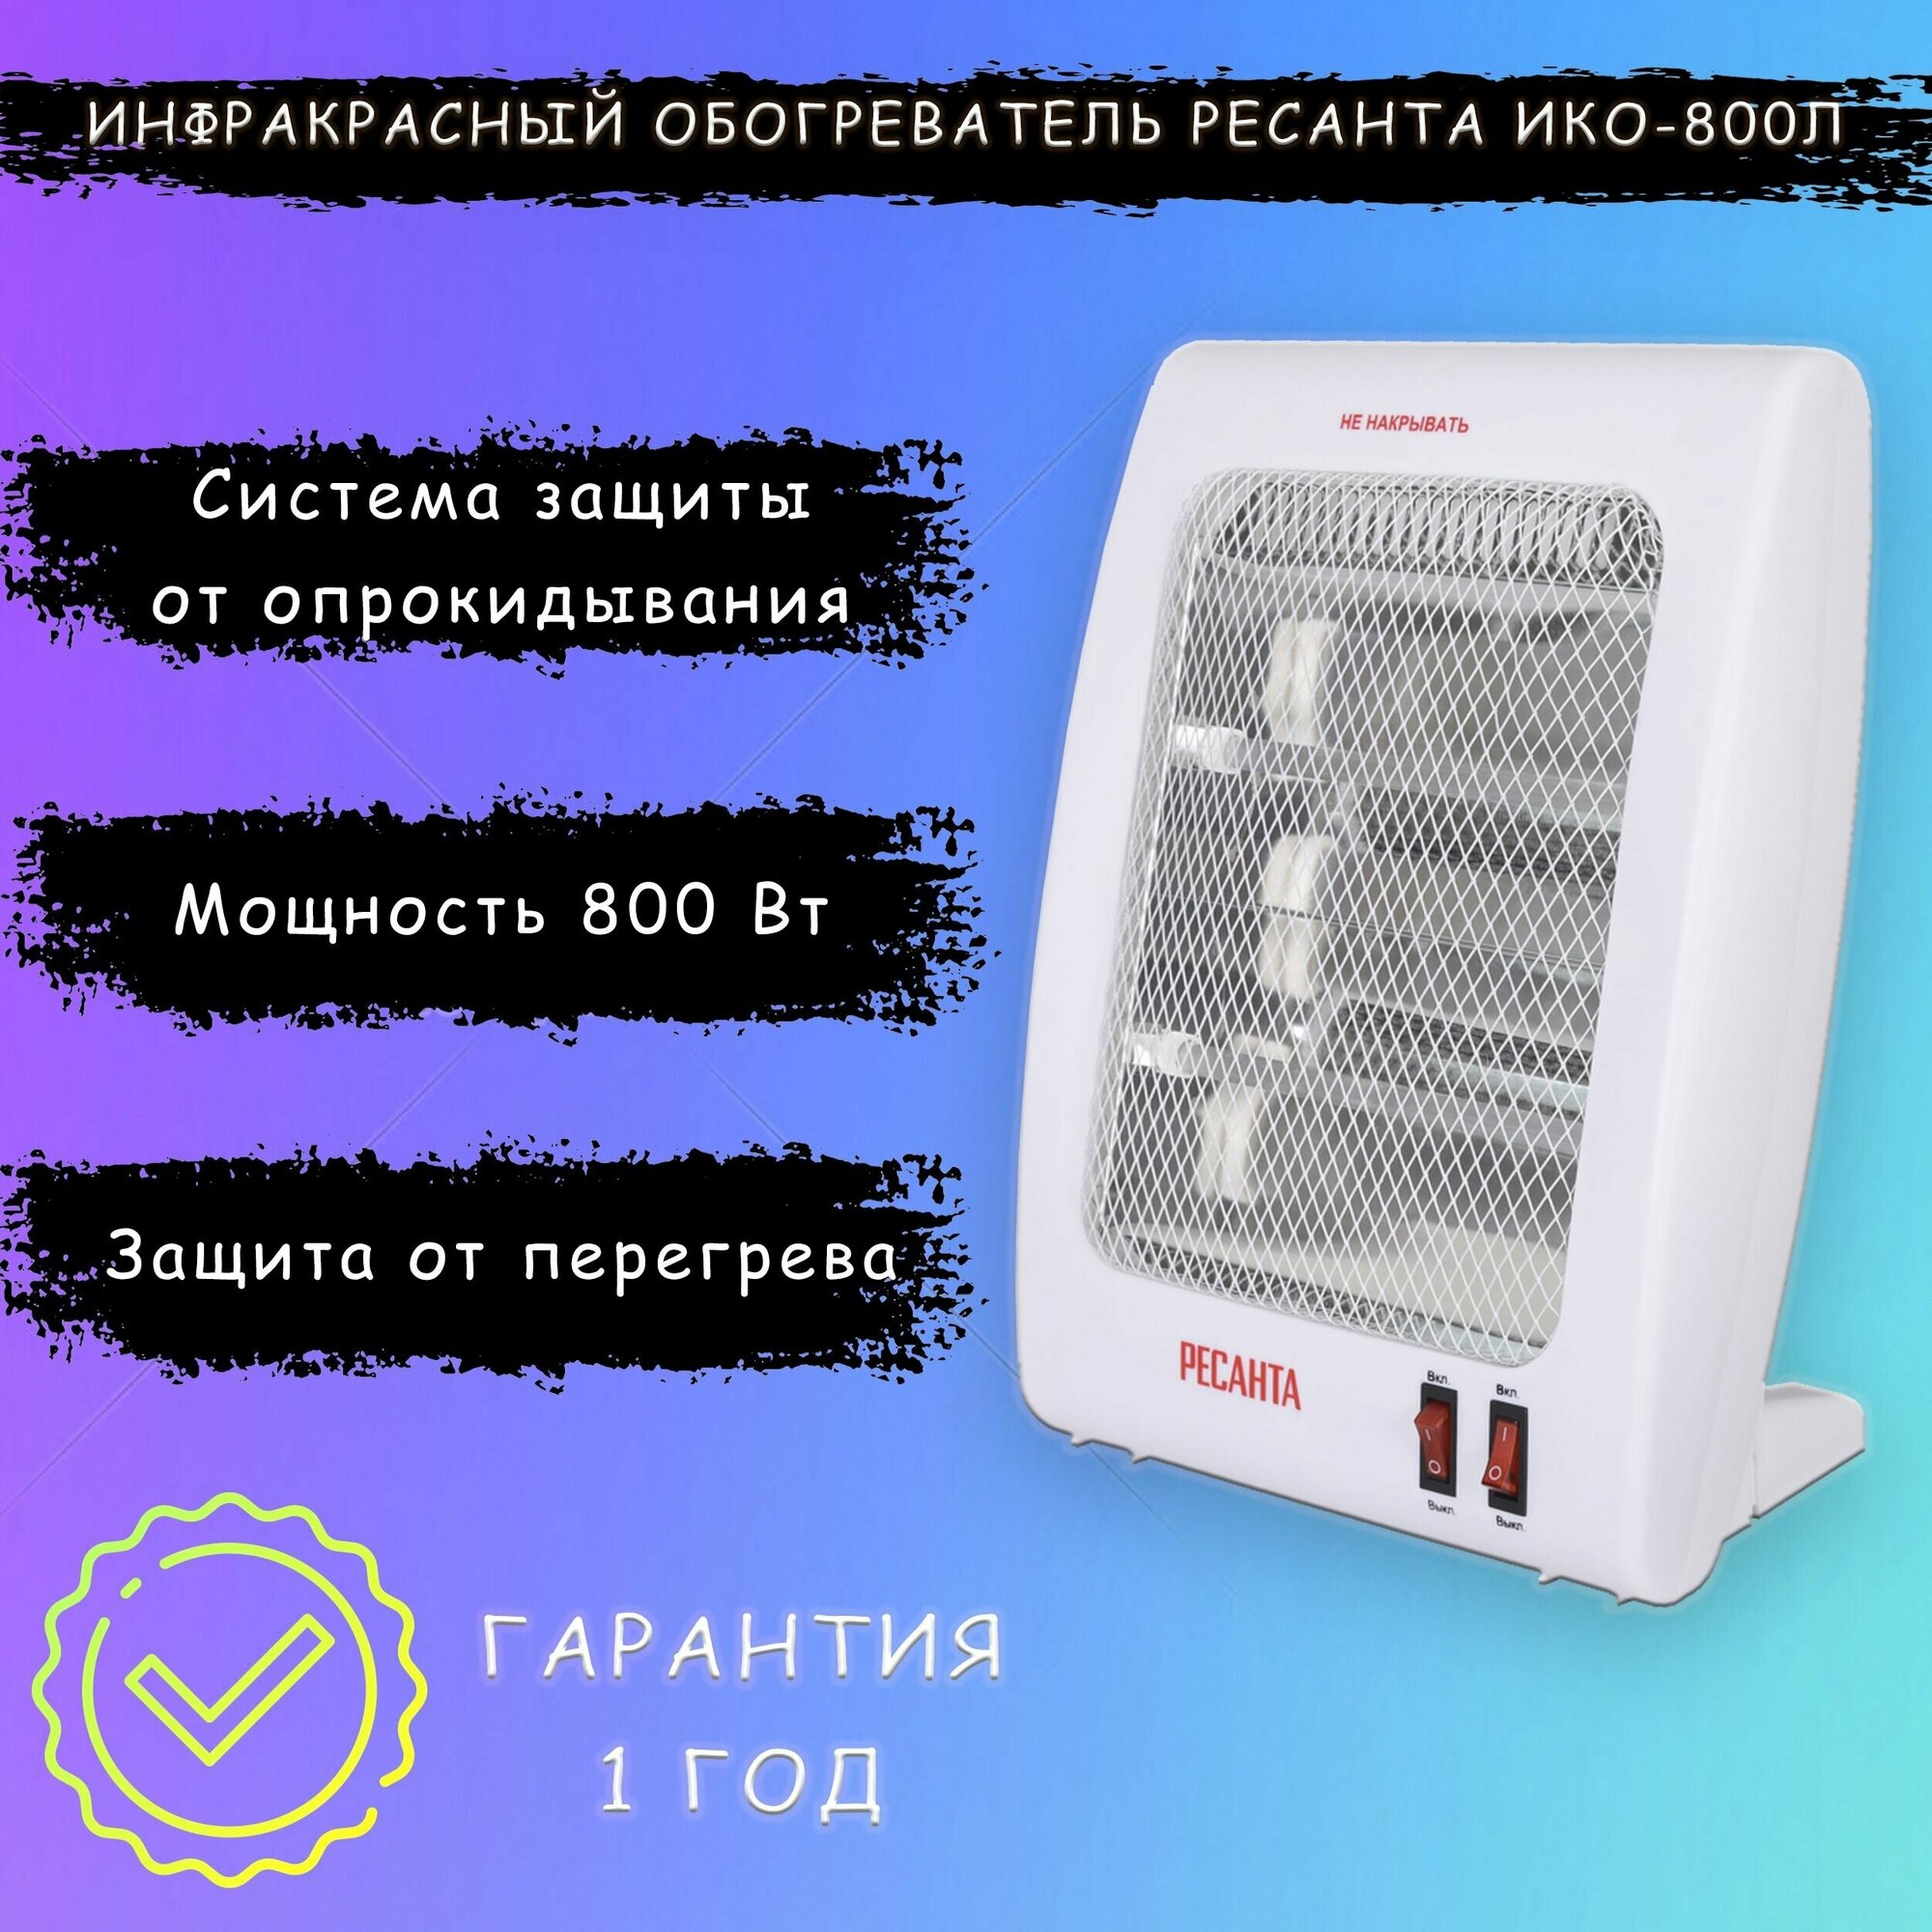 Инфракрасный обогреватель ИКО-800Л (кварцевый) Ресанта